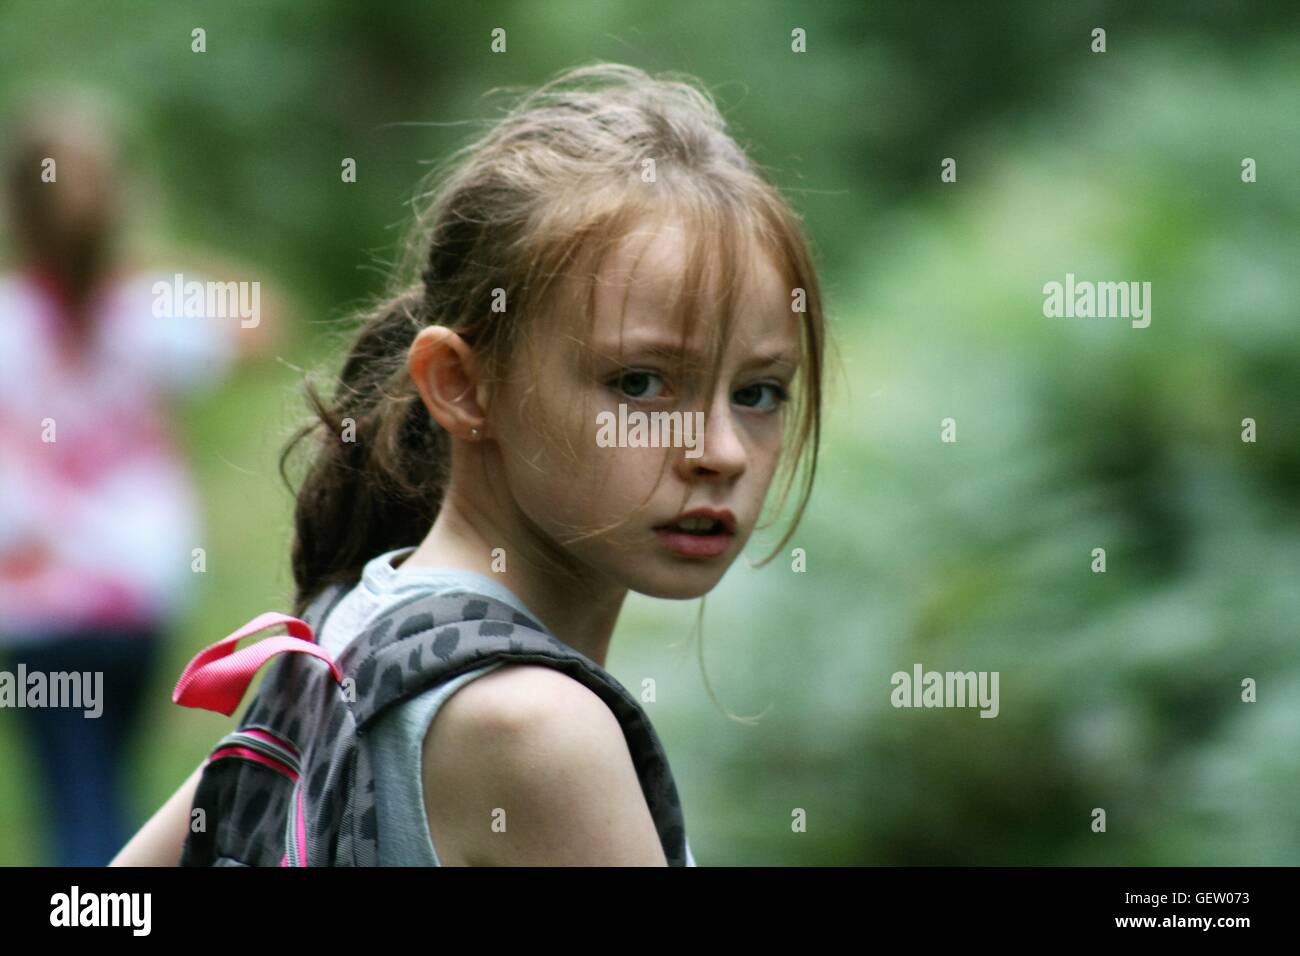 young girl looking at camera Stock Photo